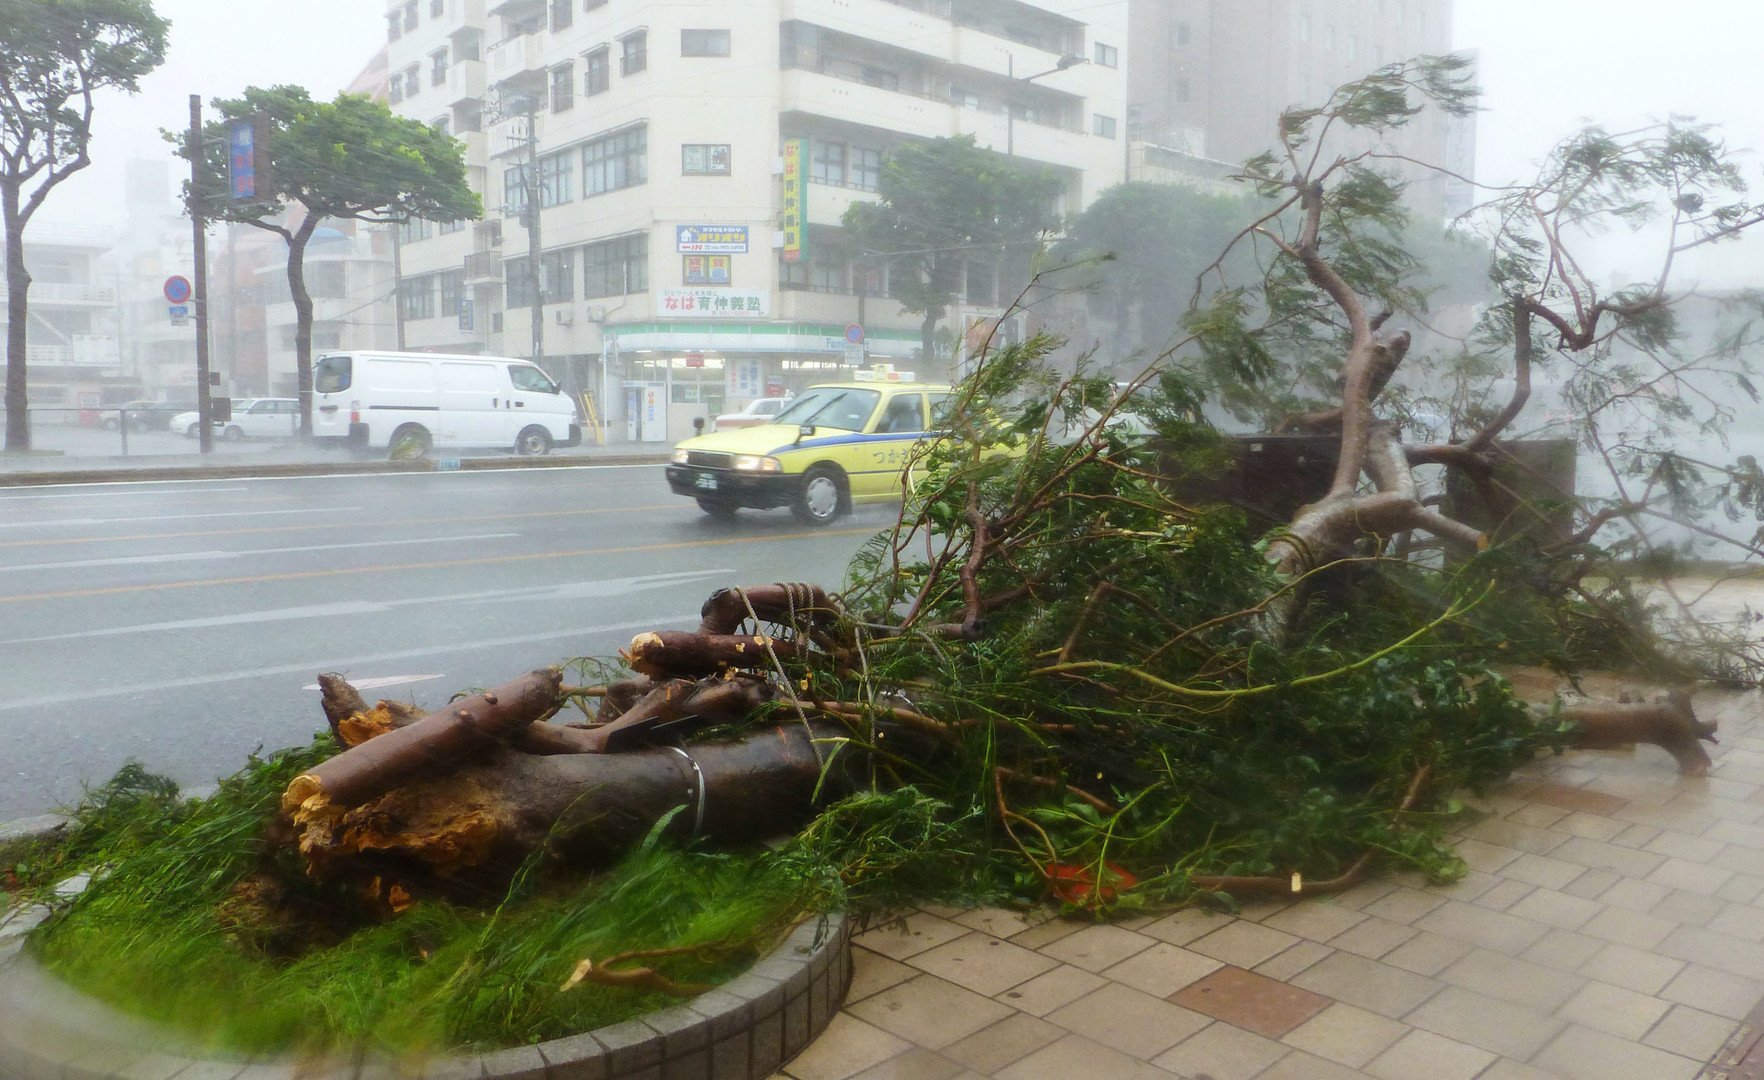 شجرة محطمة على جانب الطريق أعقاب إعصار نيوغوري في جزيرة أوكيناوا جنوب اليابان، 8 يوليو/تموز 